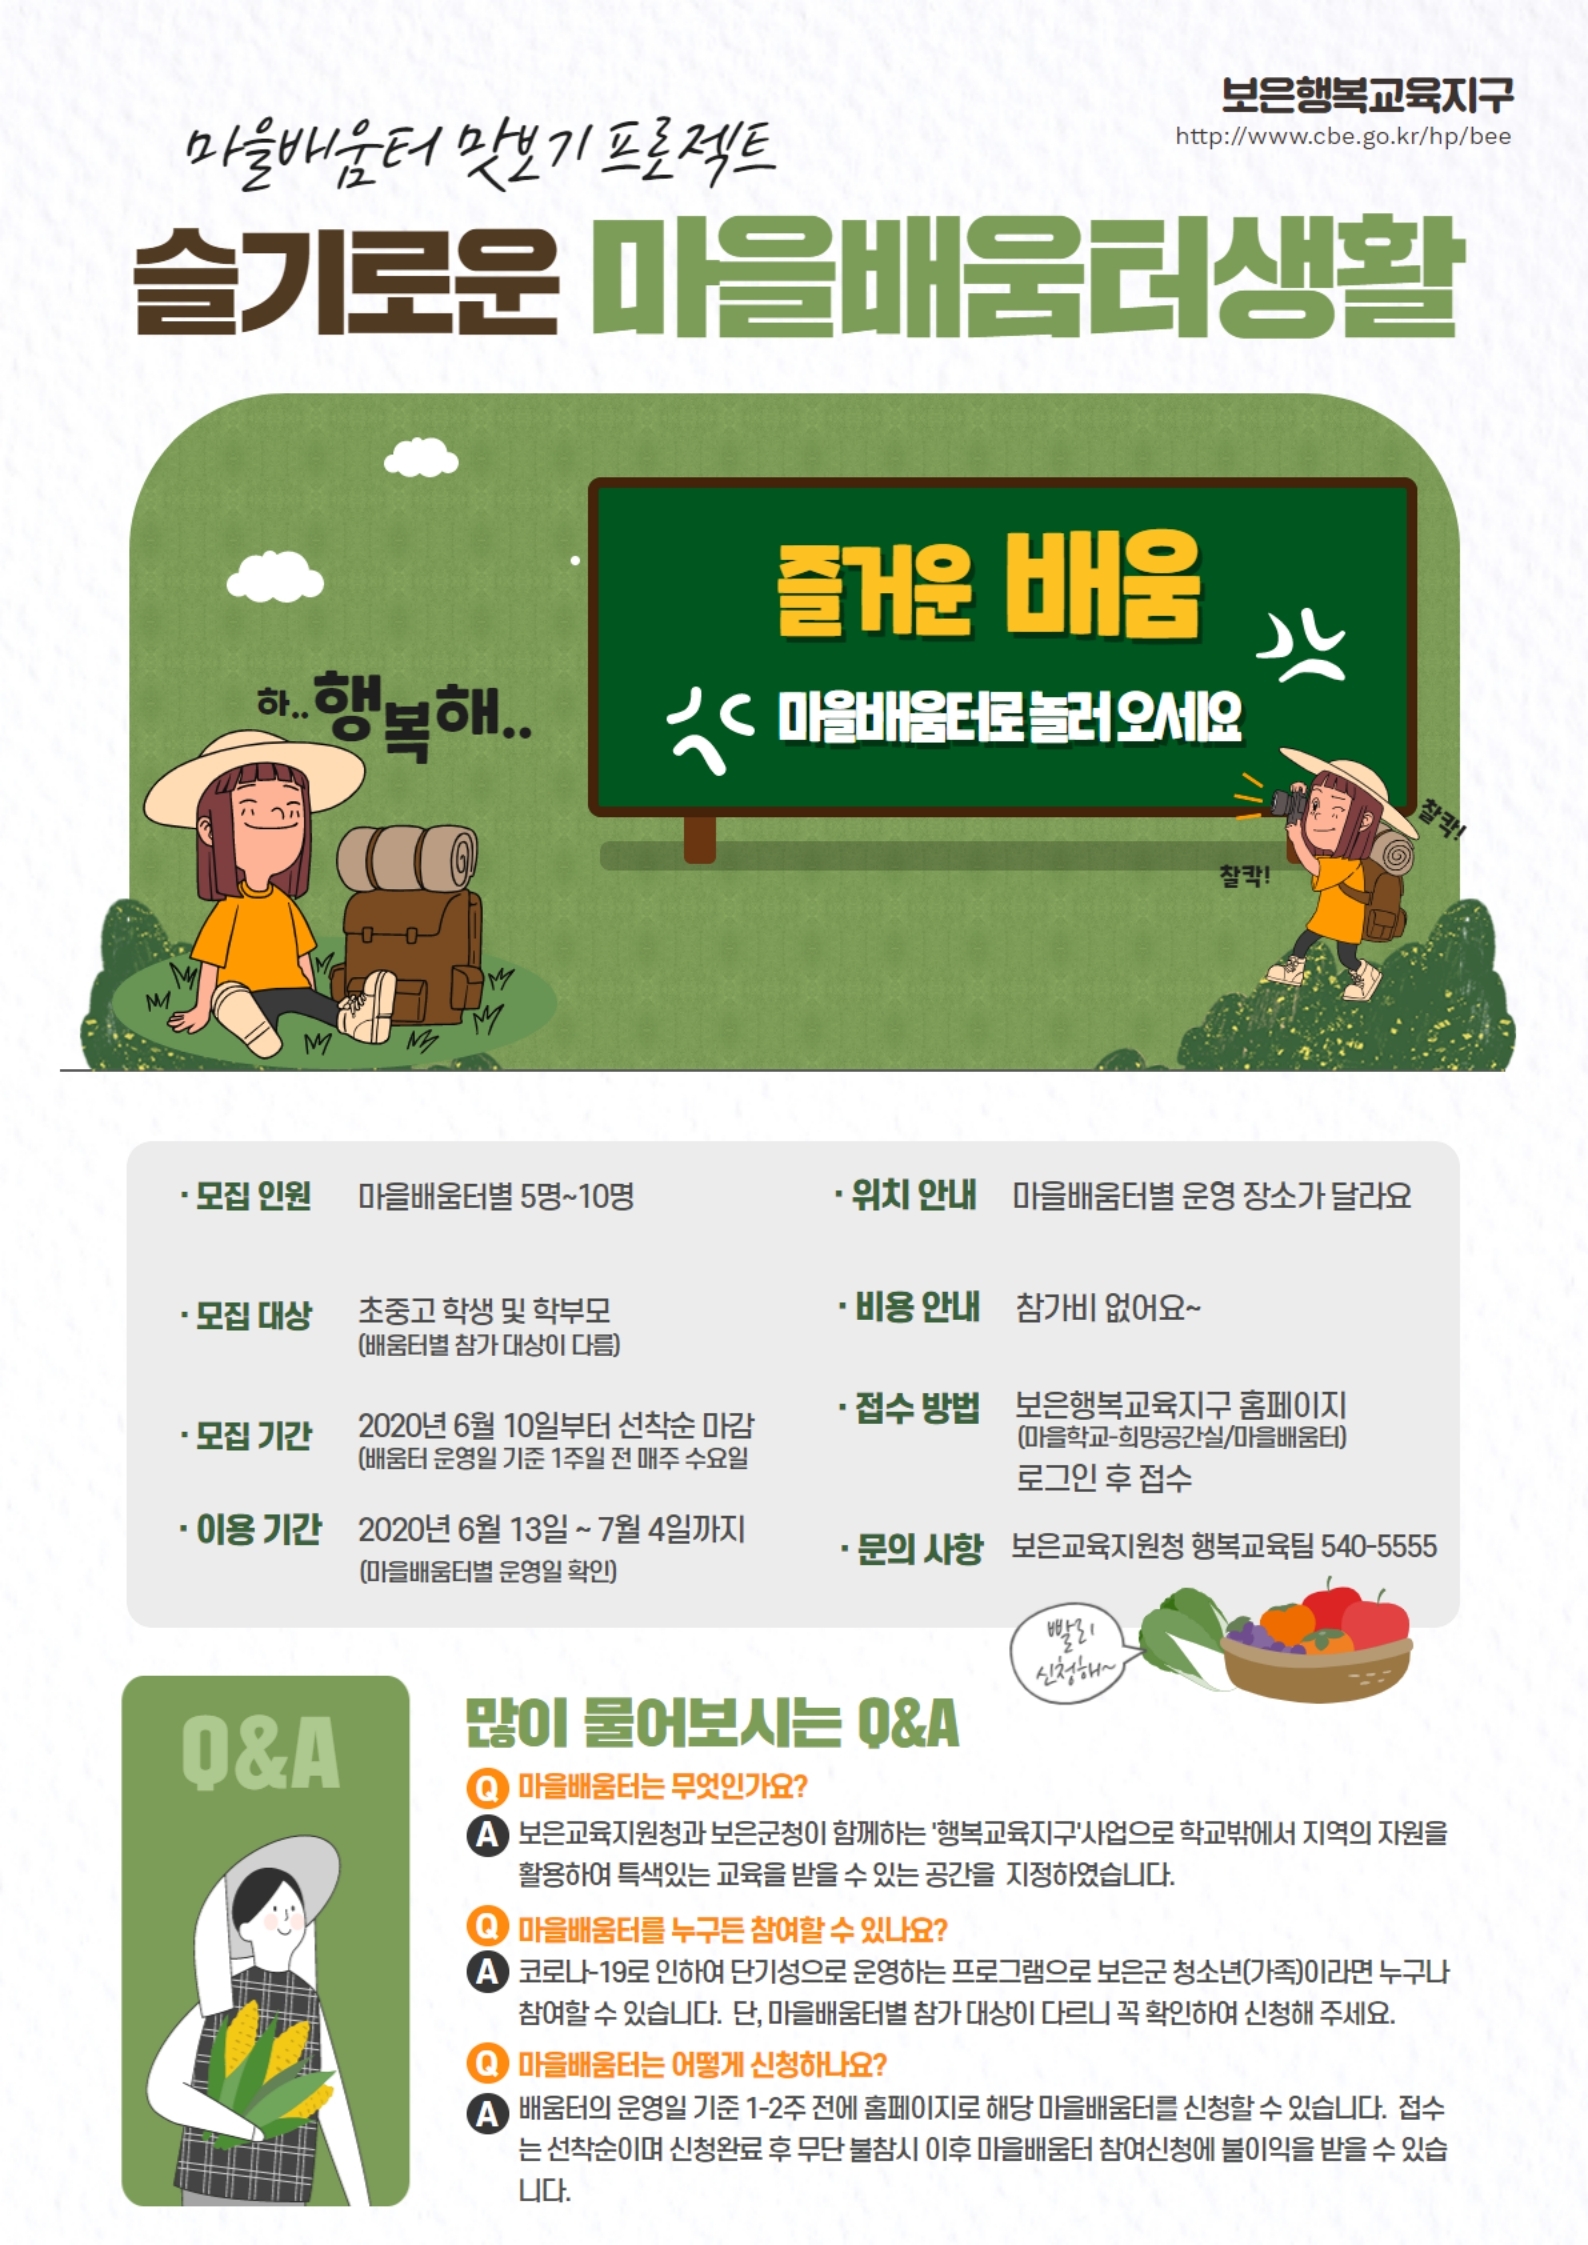 충청북도보은교육지원청 행복교육센터_마을배움터 맛보기 프로젝트 홍보물1